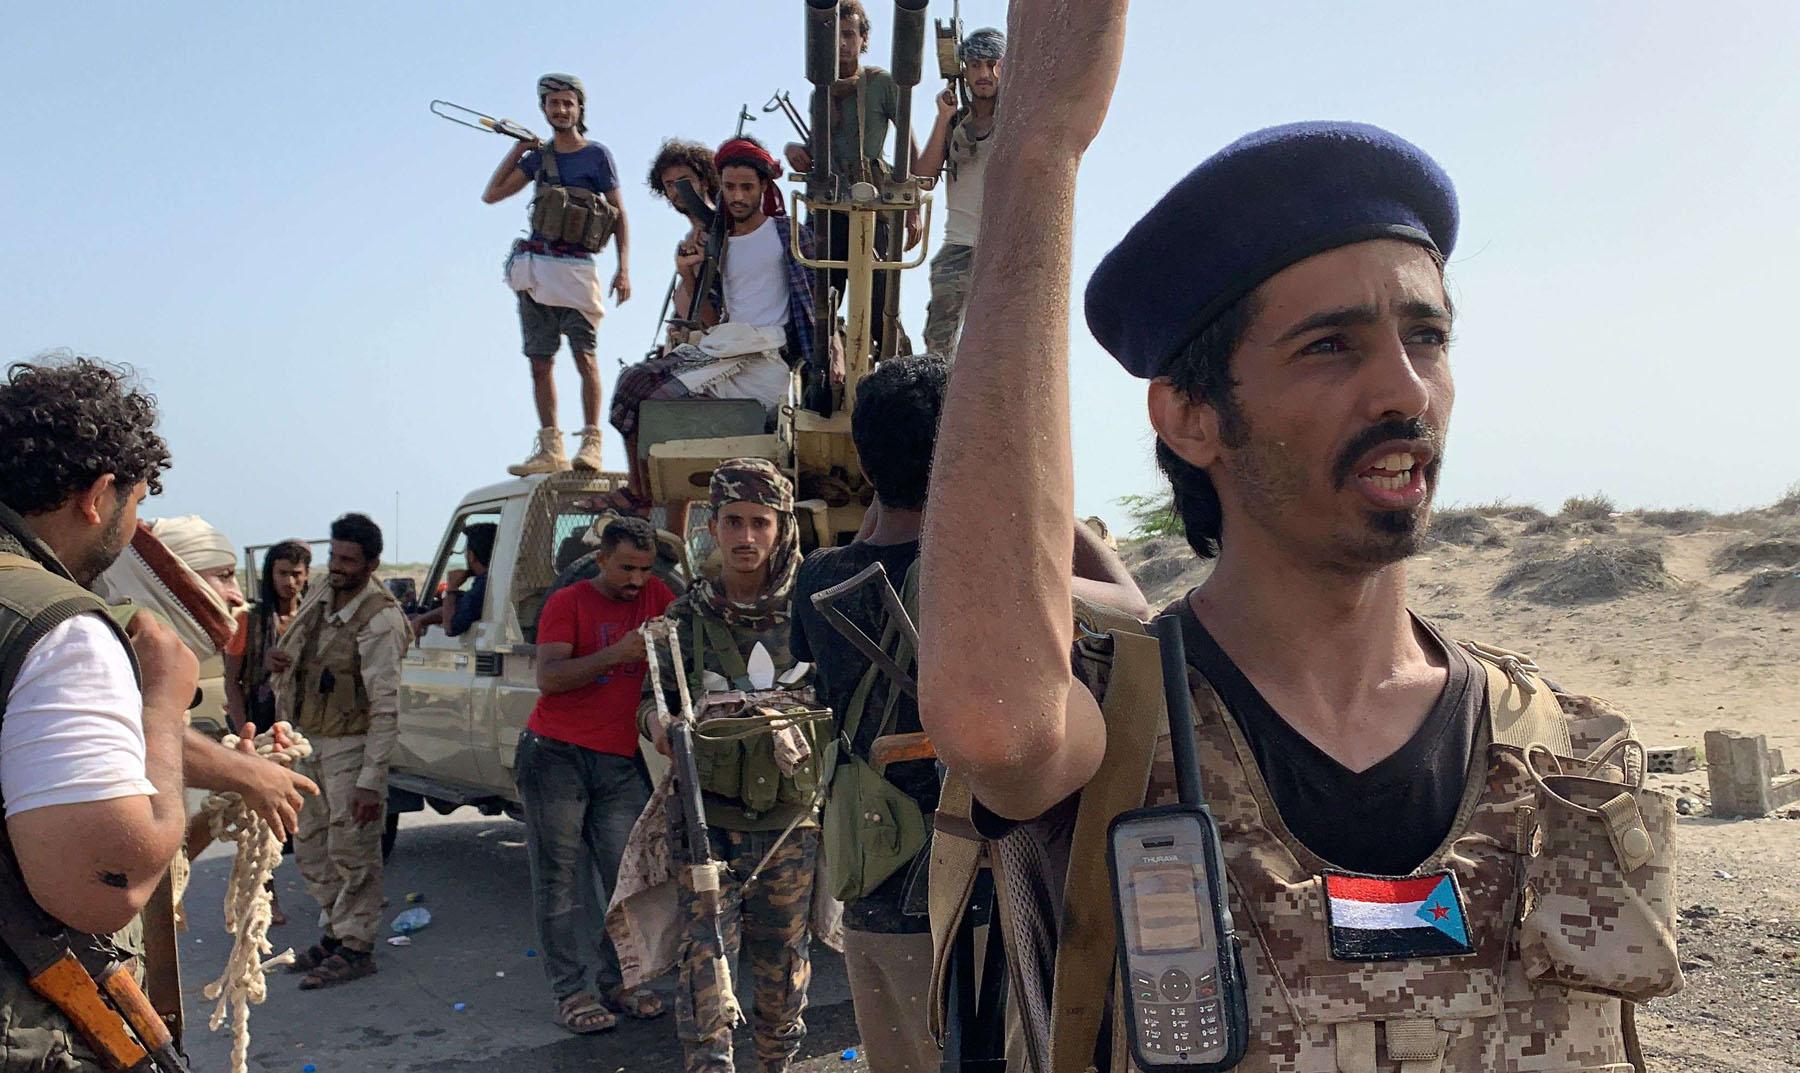 المجلس الانتقالي الجنوبي العدو اللدود للقاعدة والاخوان في اليمن